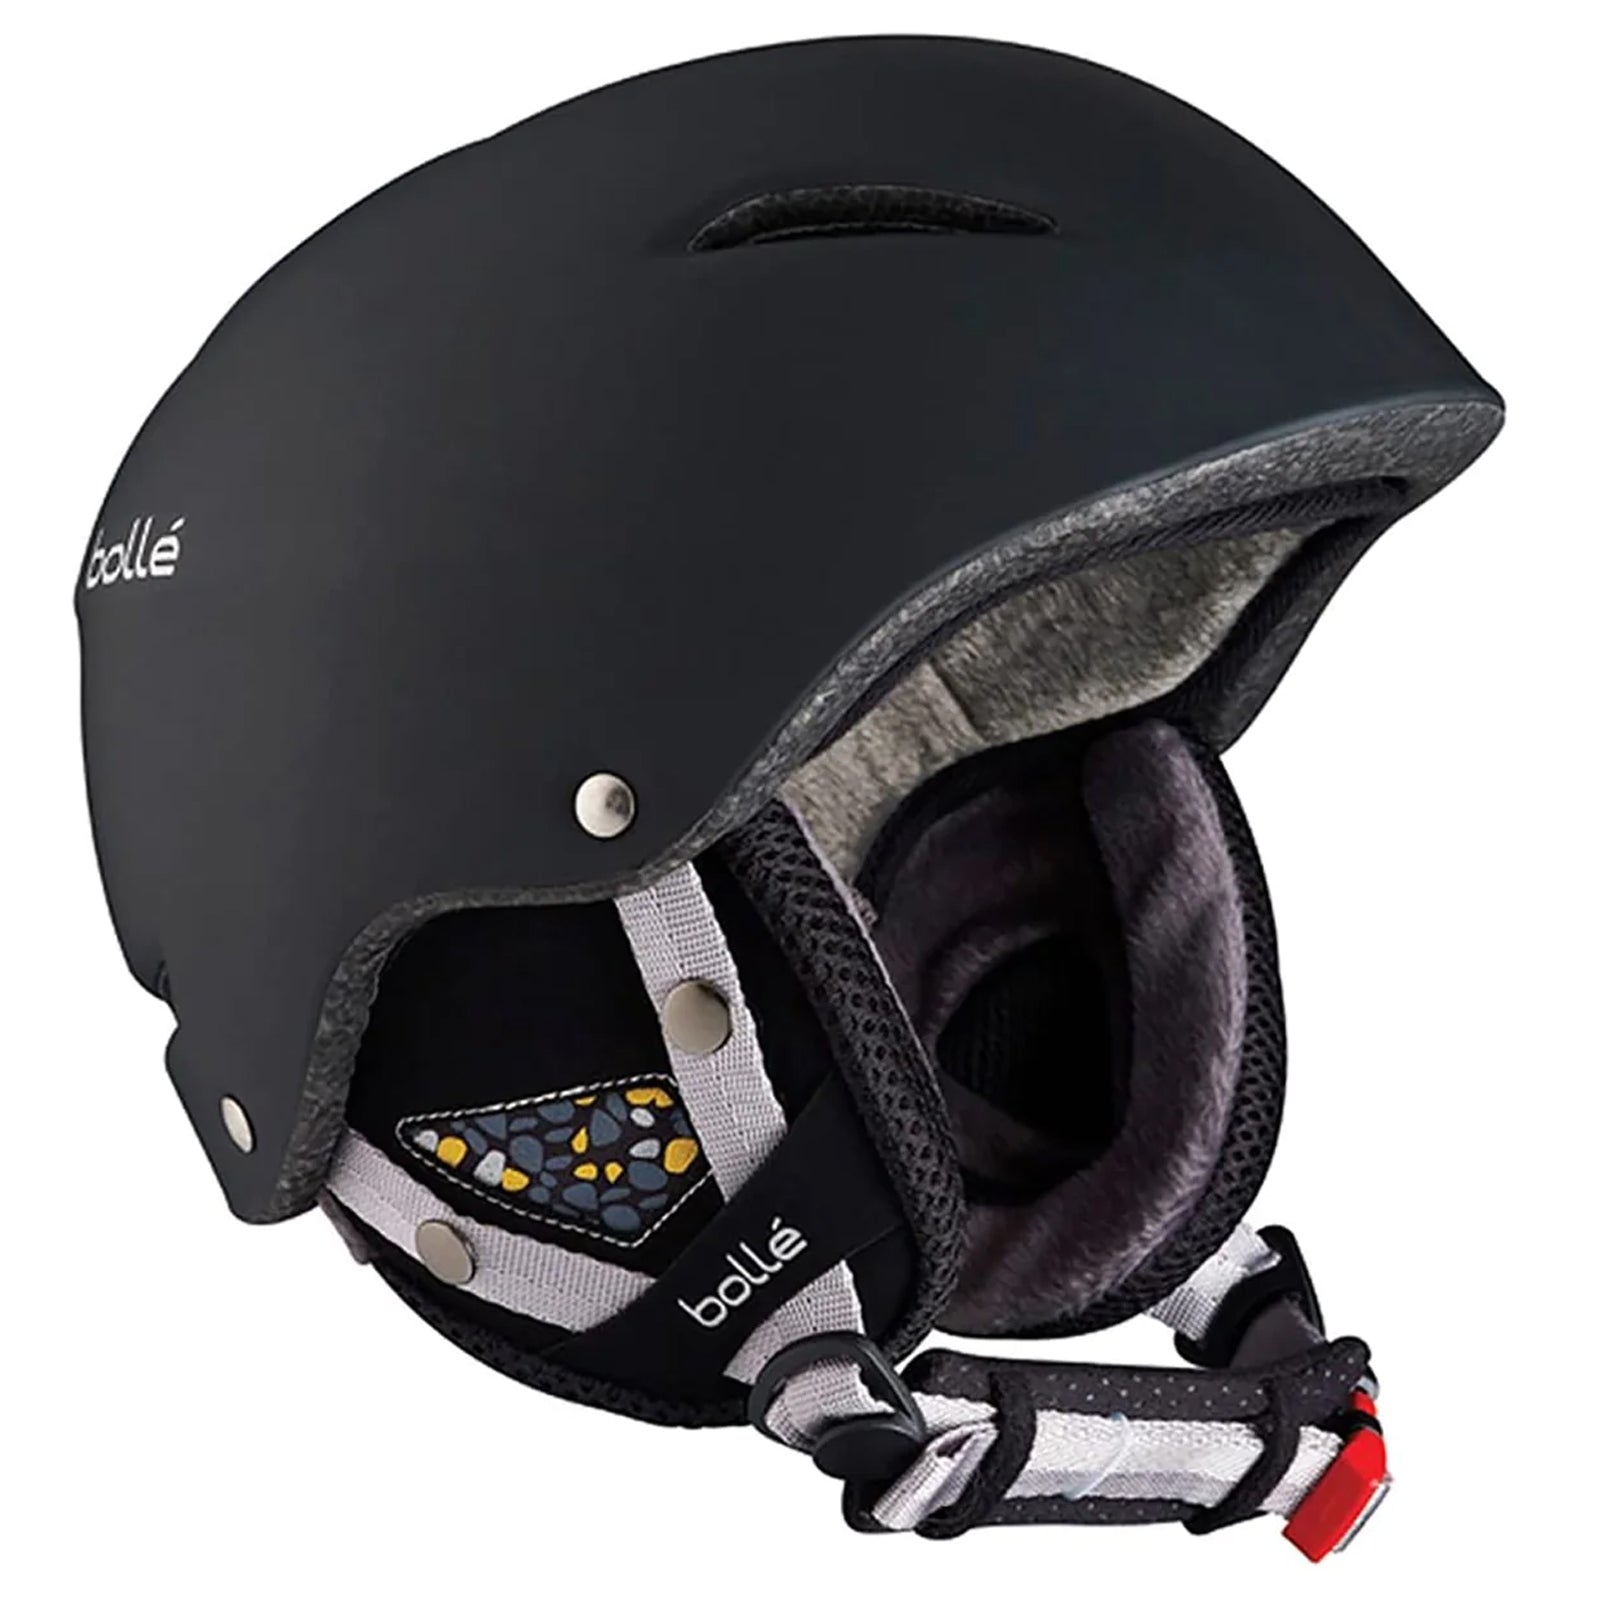 
Bolle B-Star Adult Snow Helmets 